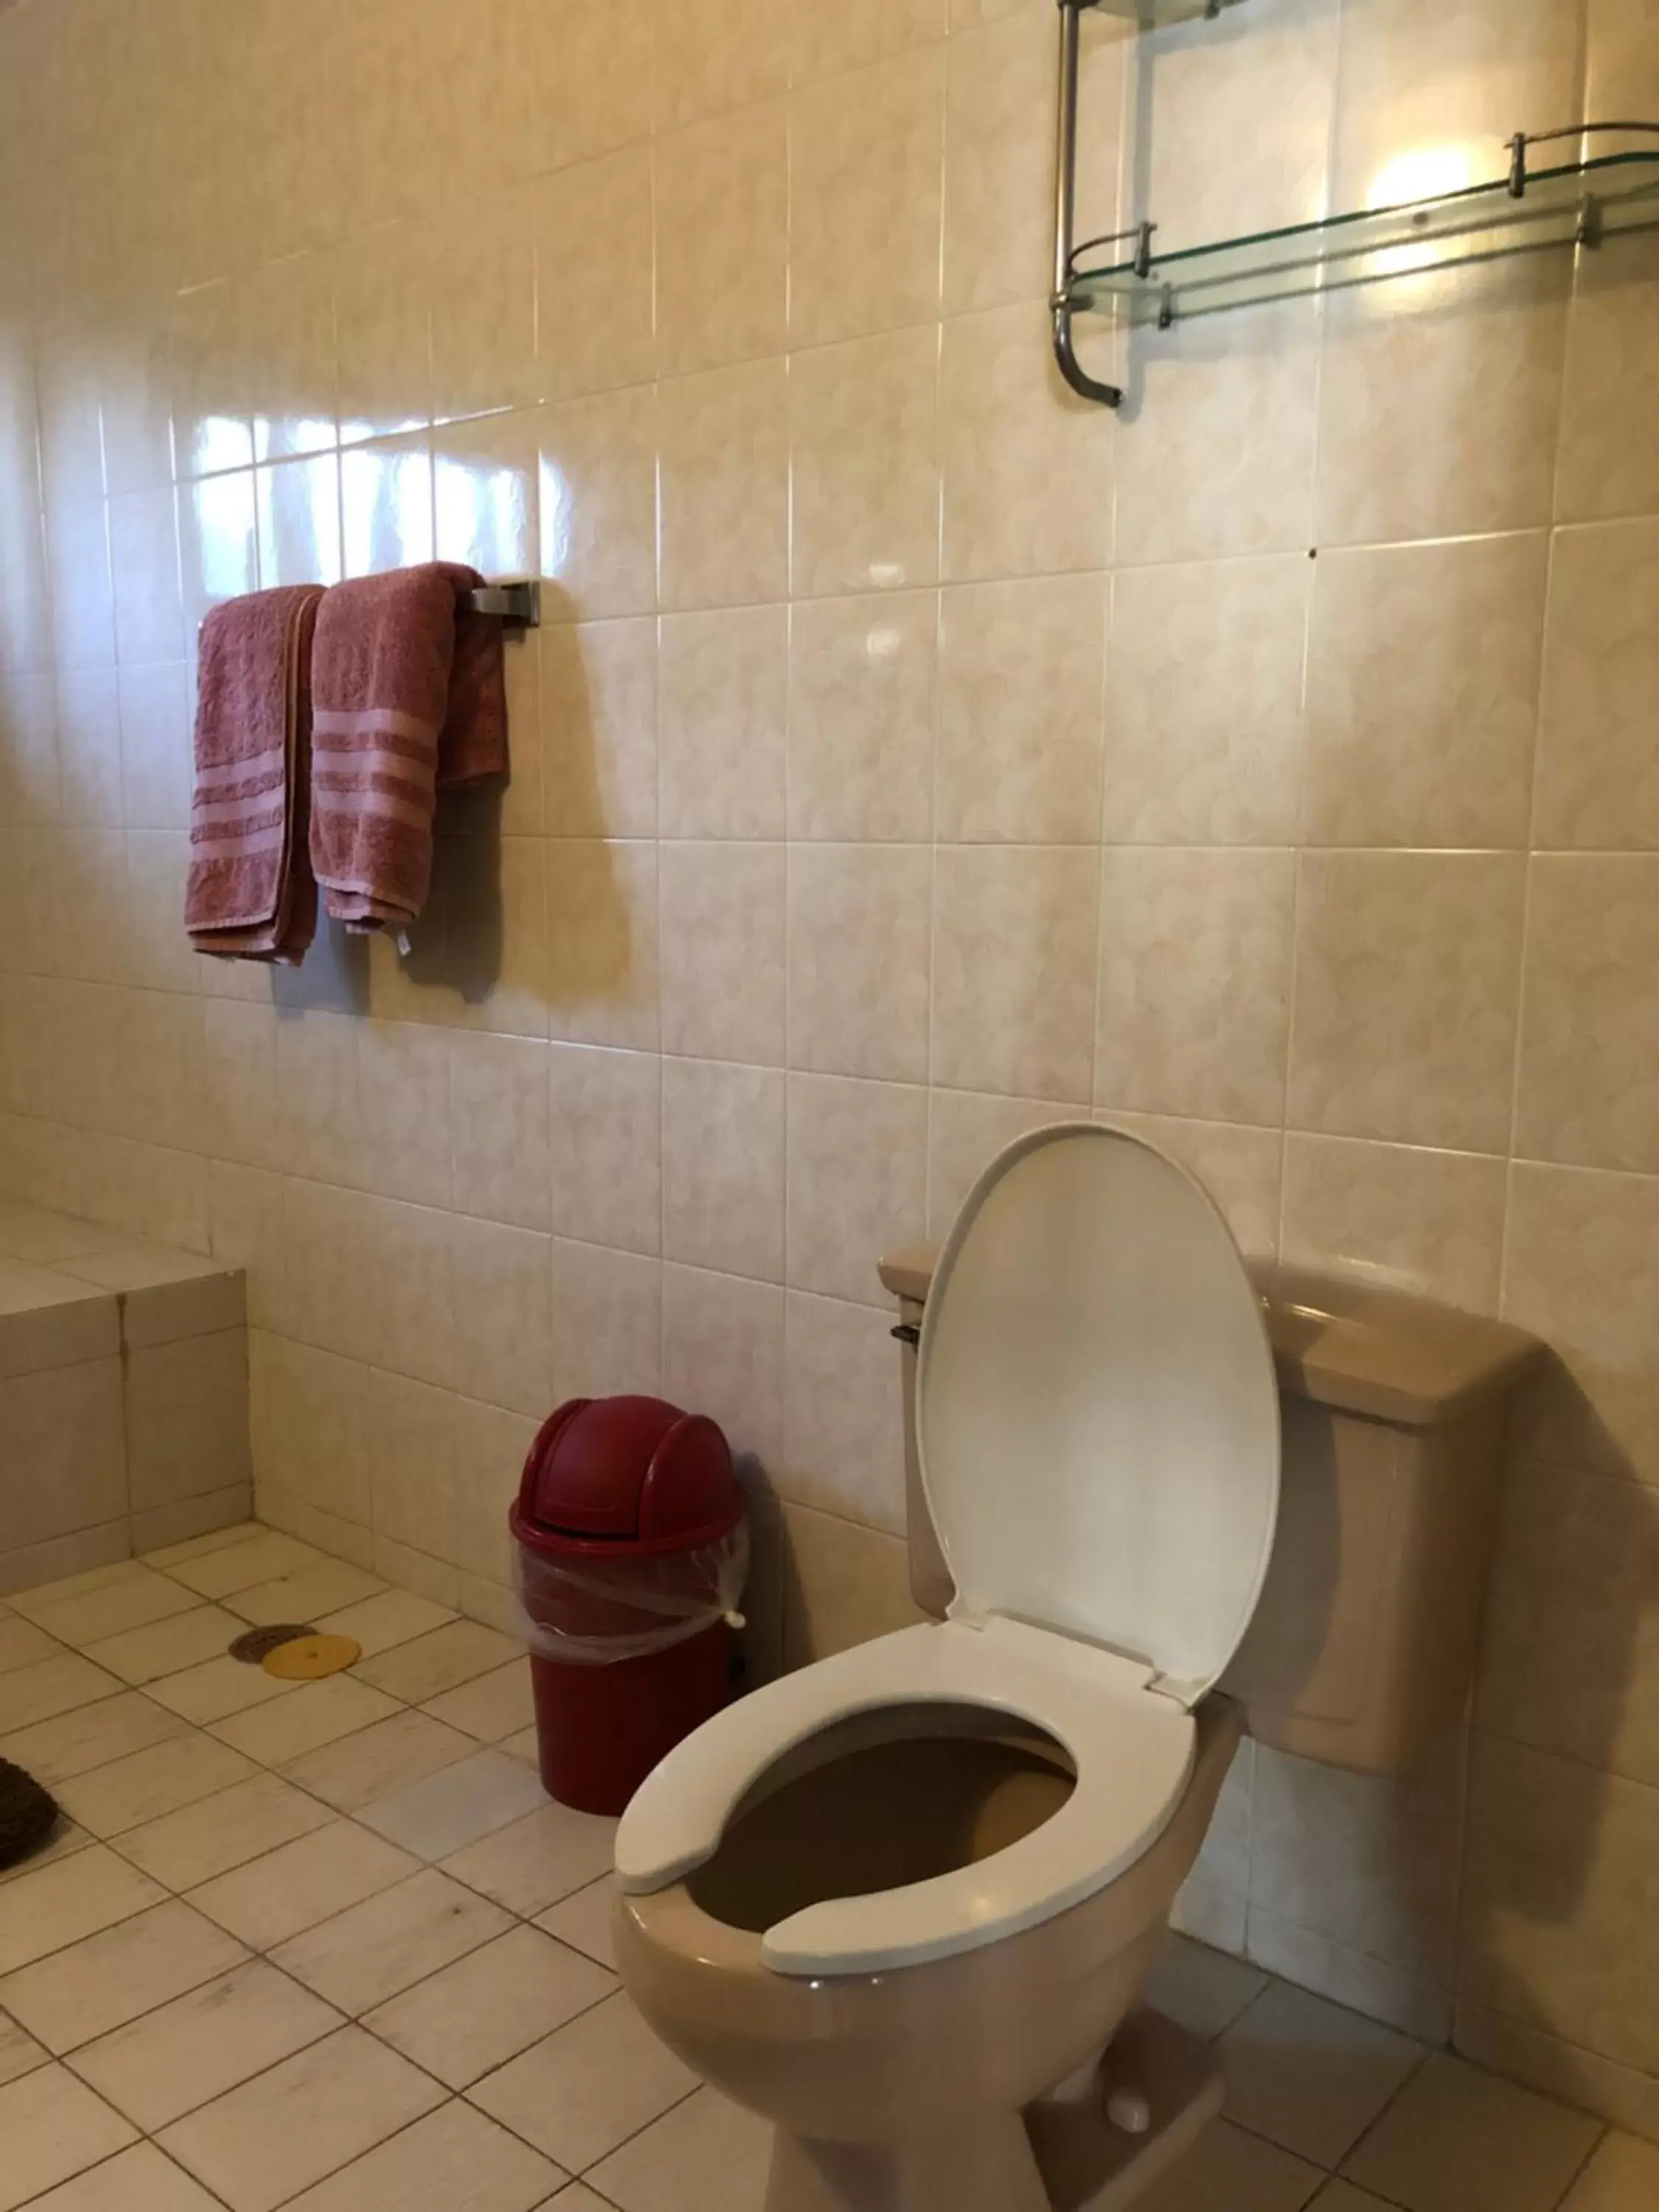 Toilet, Bathroom in Villas Segovia Hotel Boutique & Suites